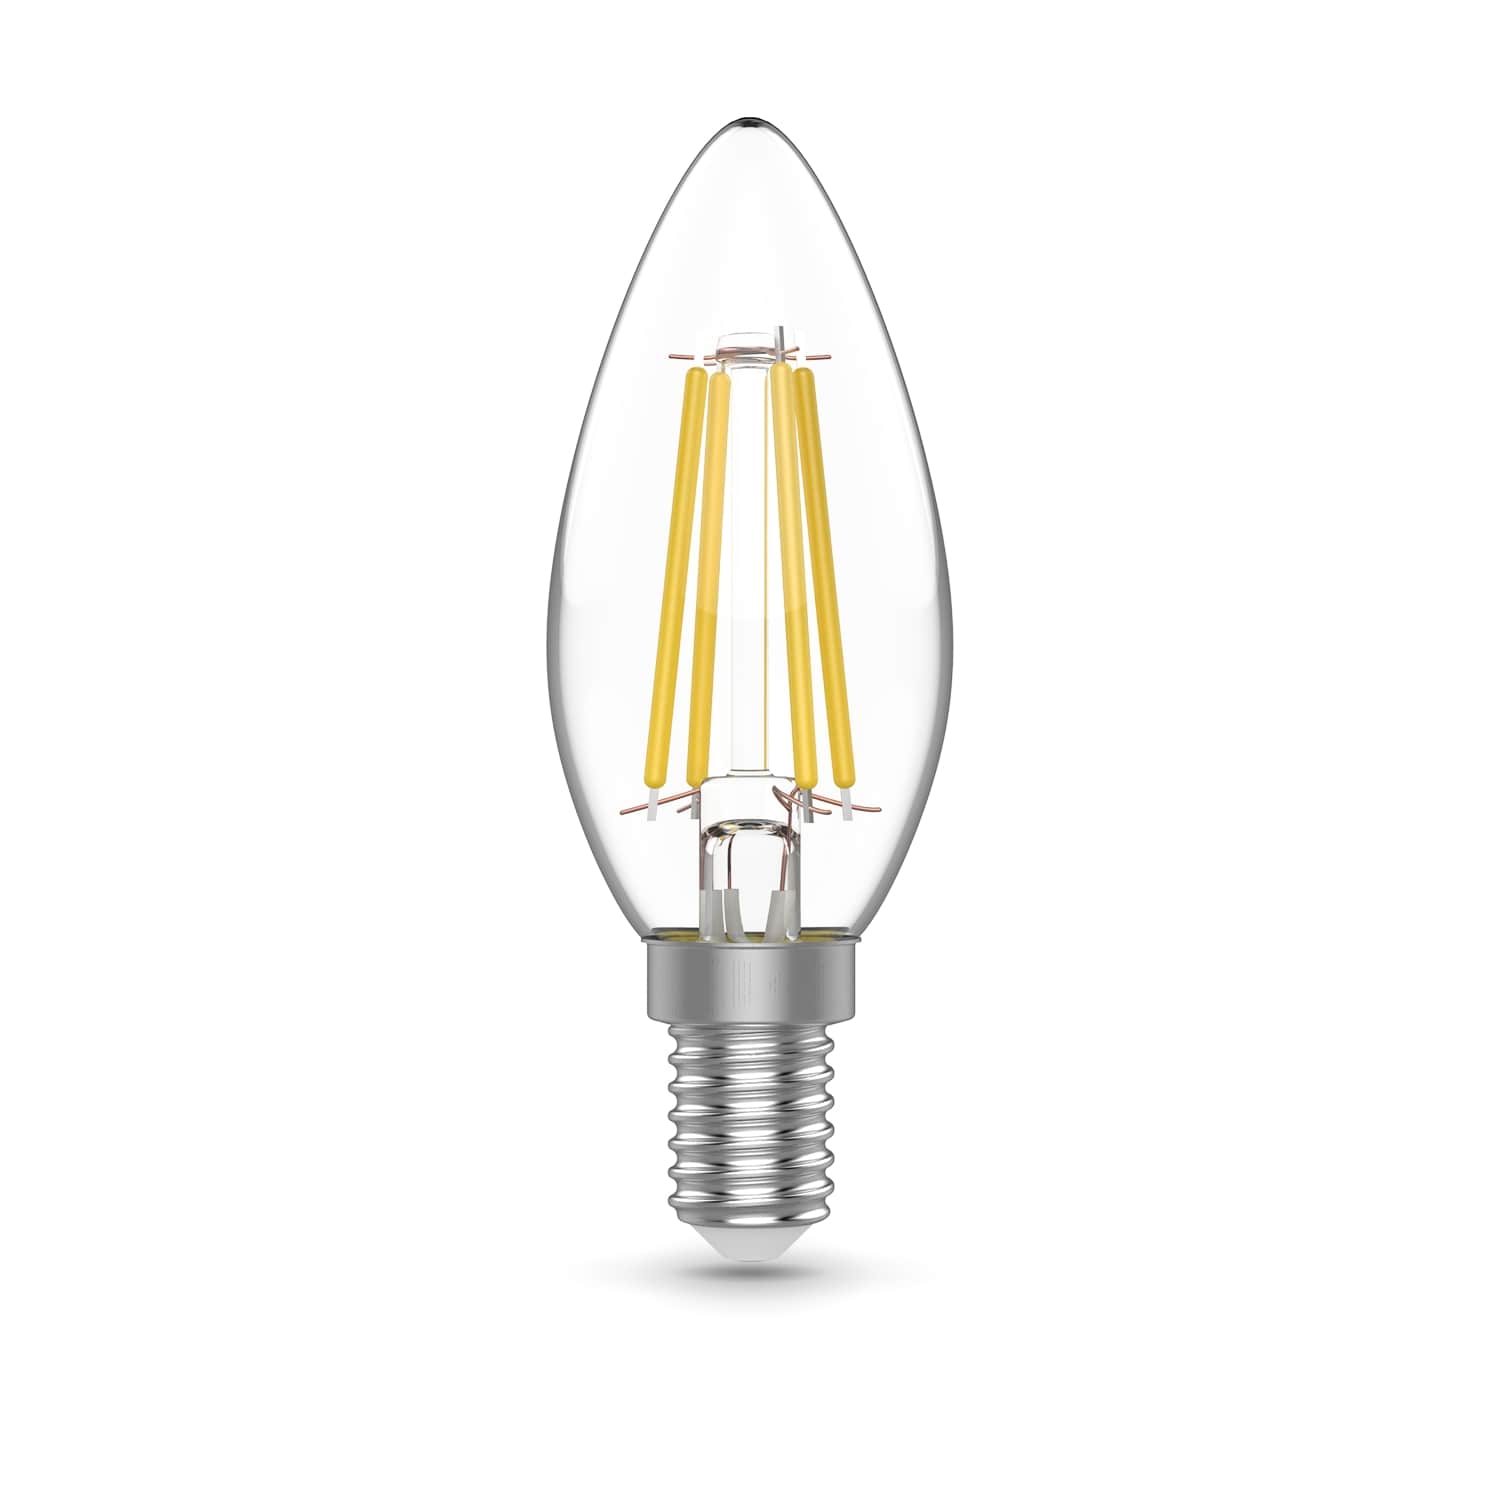 Где купить Лампа Gauss Basic Filament Свеча 5,5W 510lm 2700К Е14 LED (3 лампы в упаковке) 1/20 Gauss 